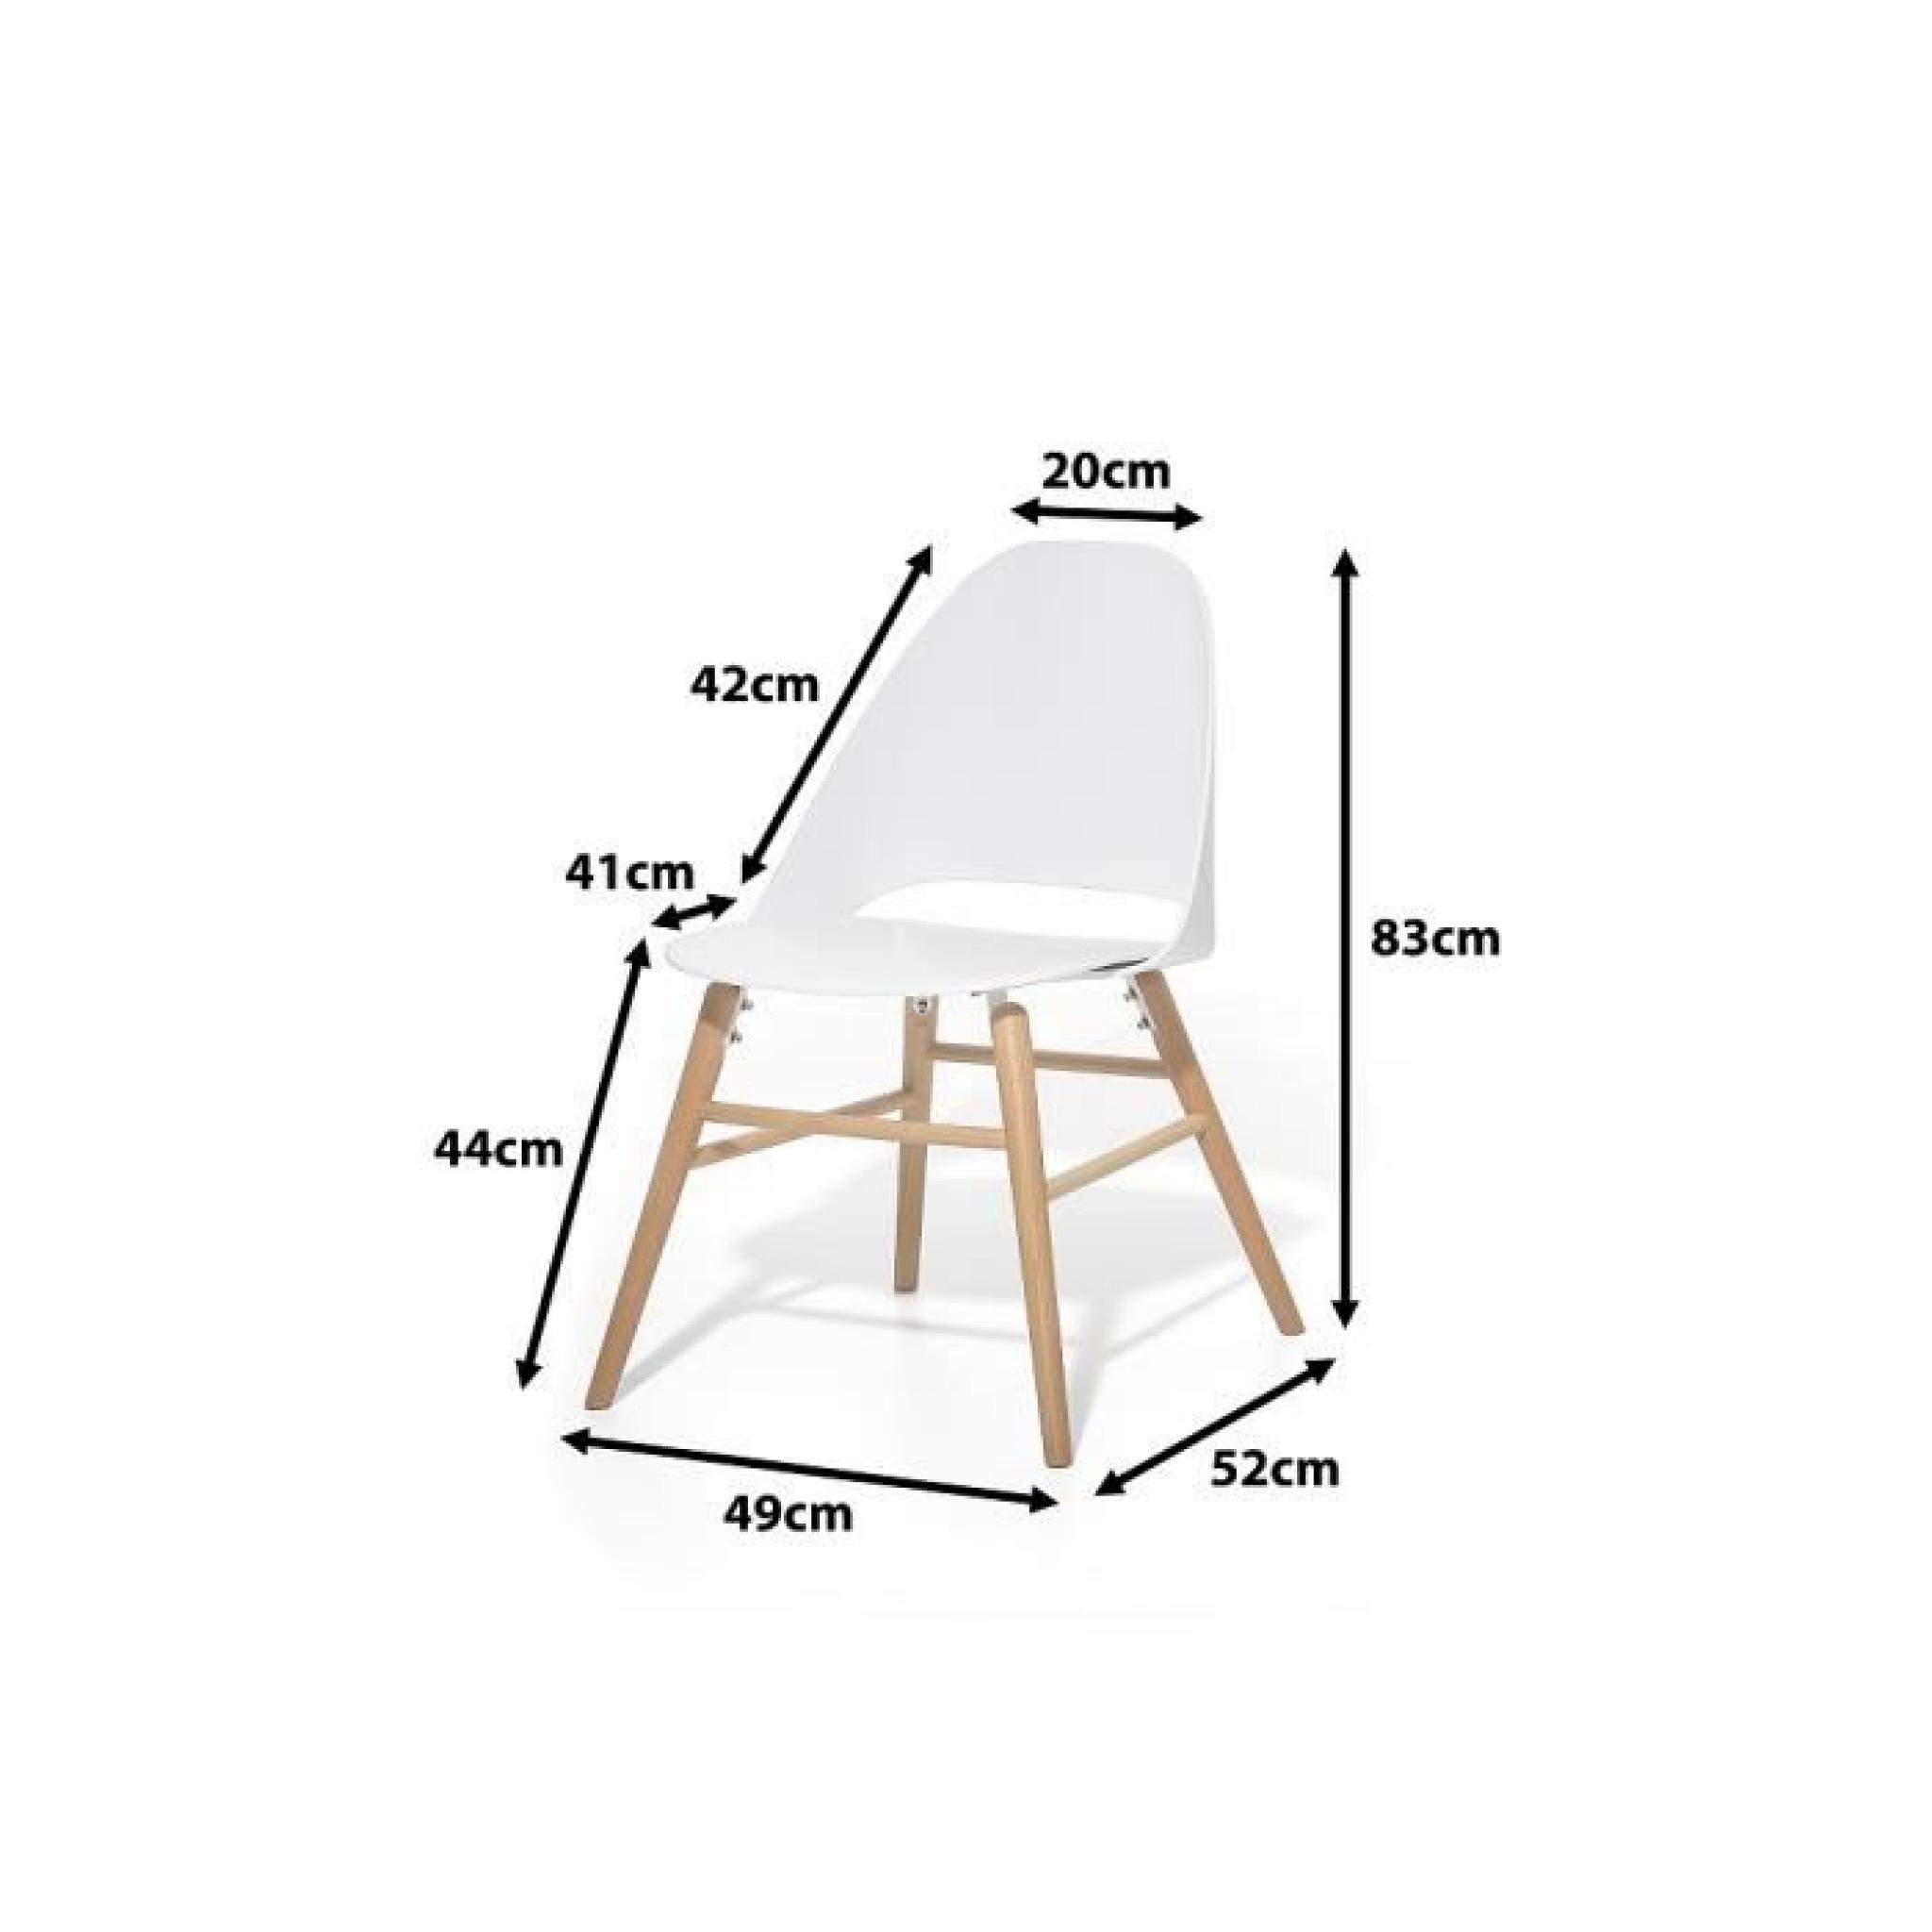 Chaise design - siège en plastique blanc - Milford pas cher